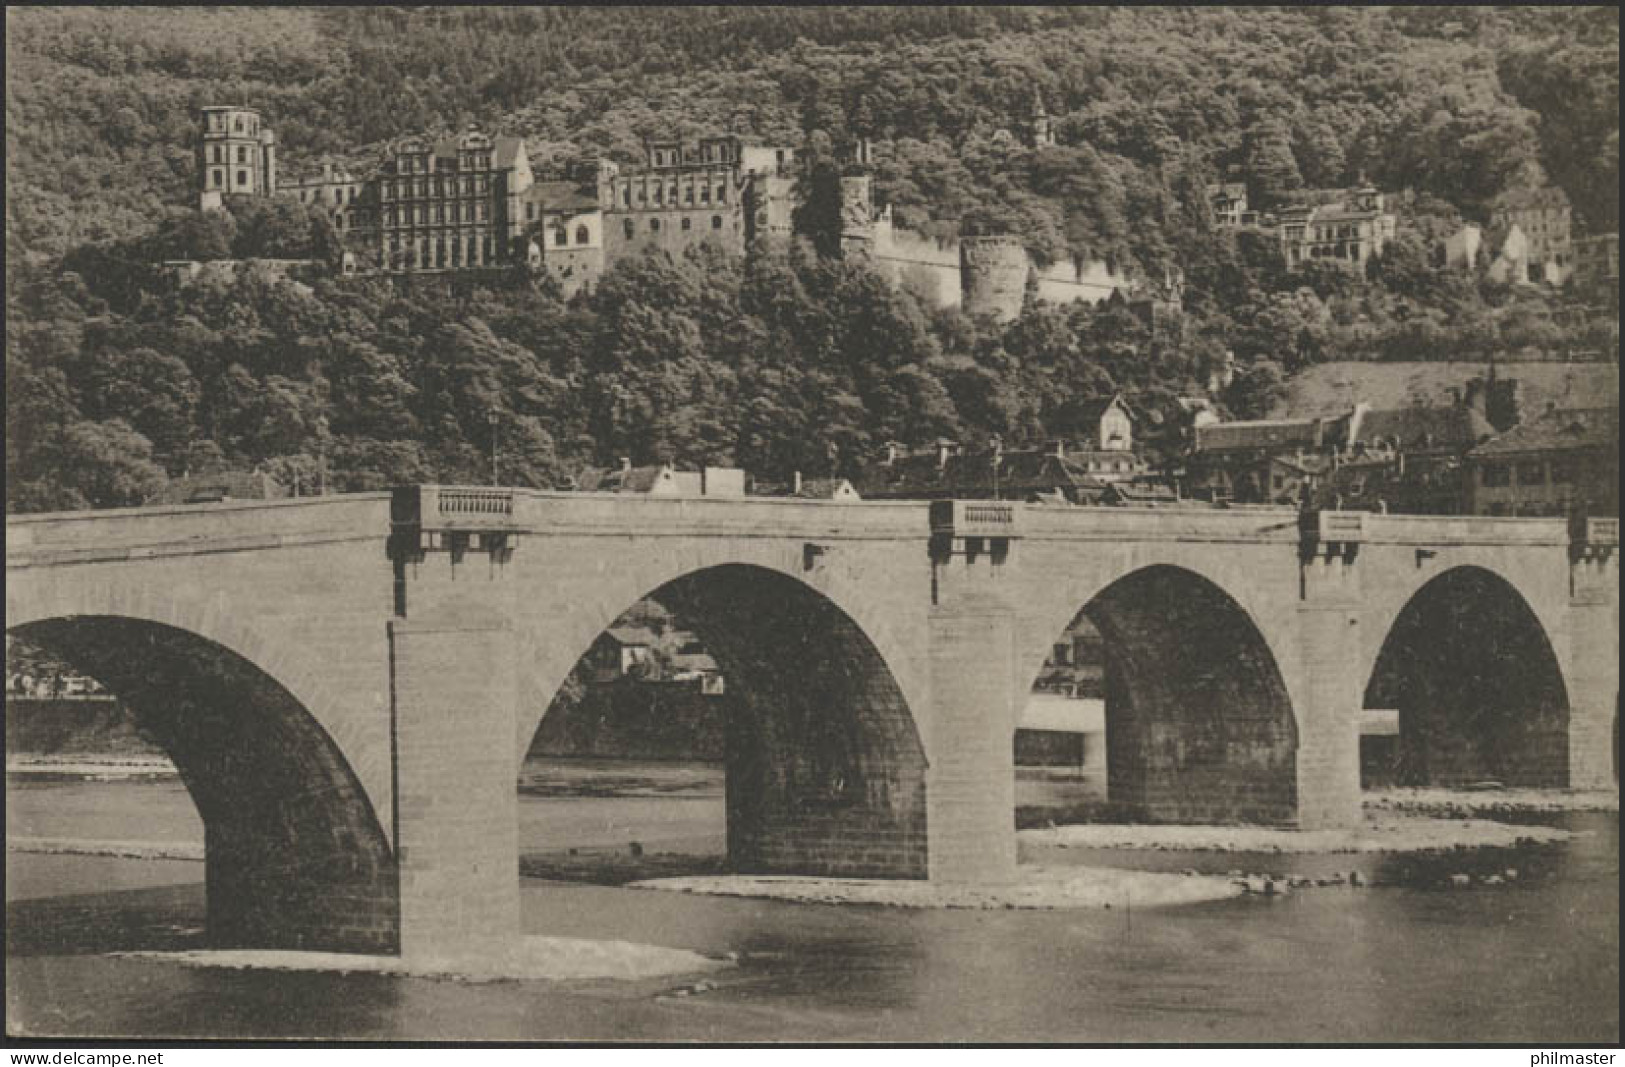 Ansichtskarte Feldpost Schloss Heidelberg Und Alte Neckarbrücke, 30.3.1915 - Bezetting 1914-18